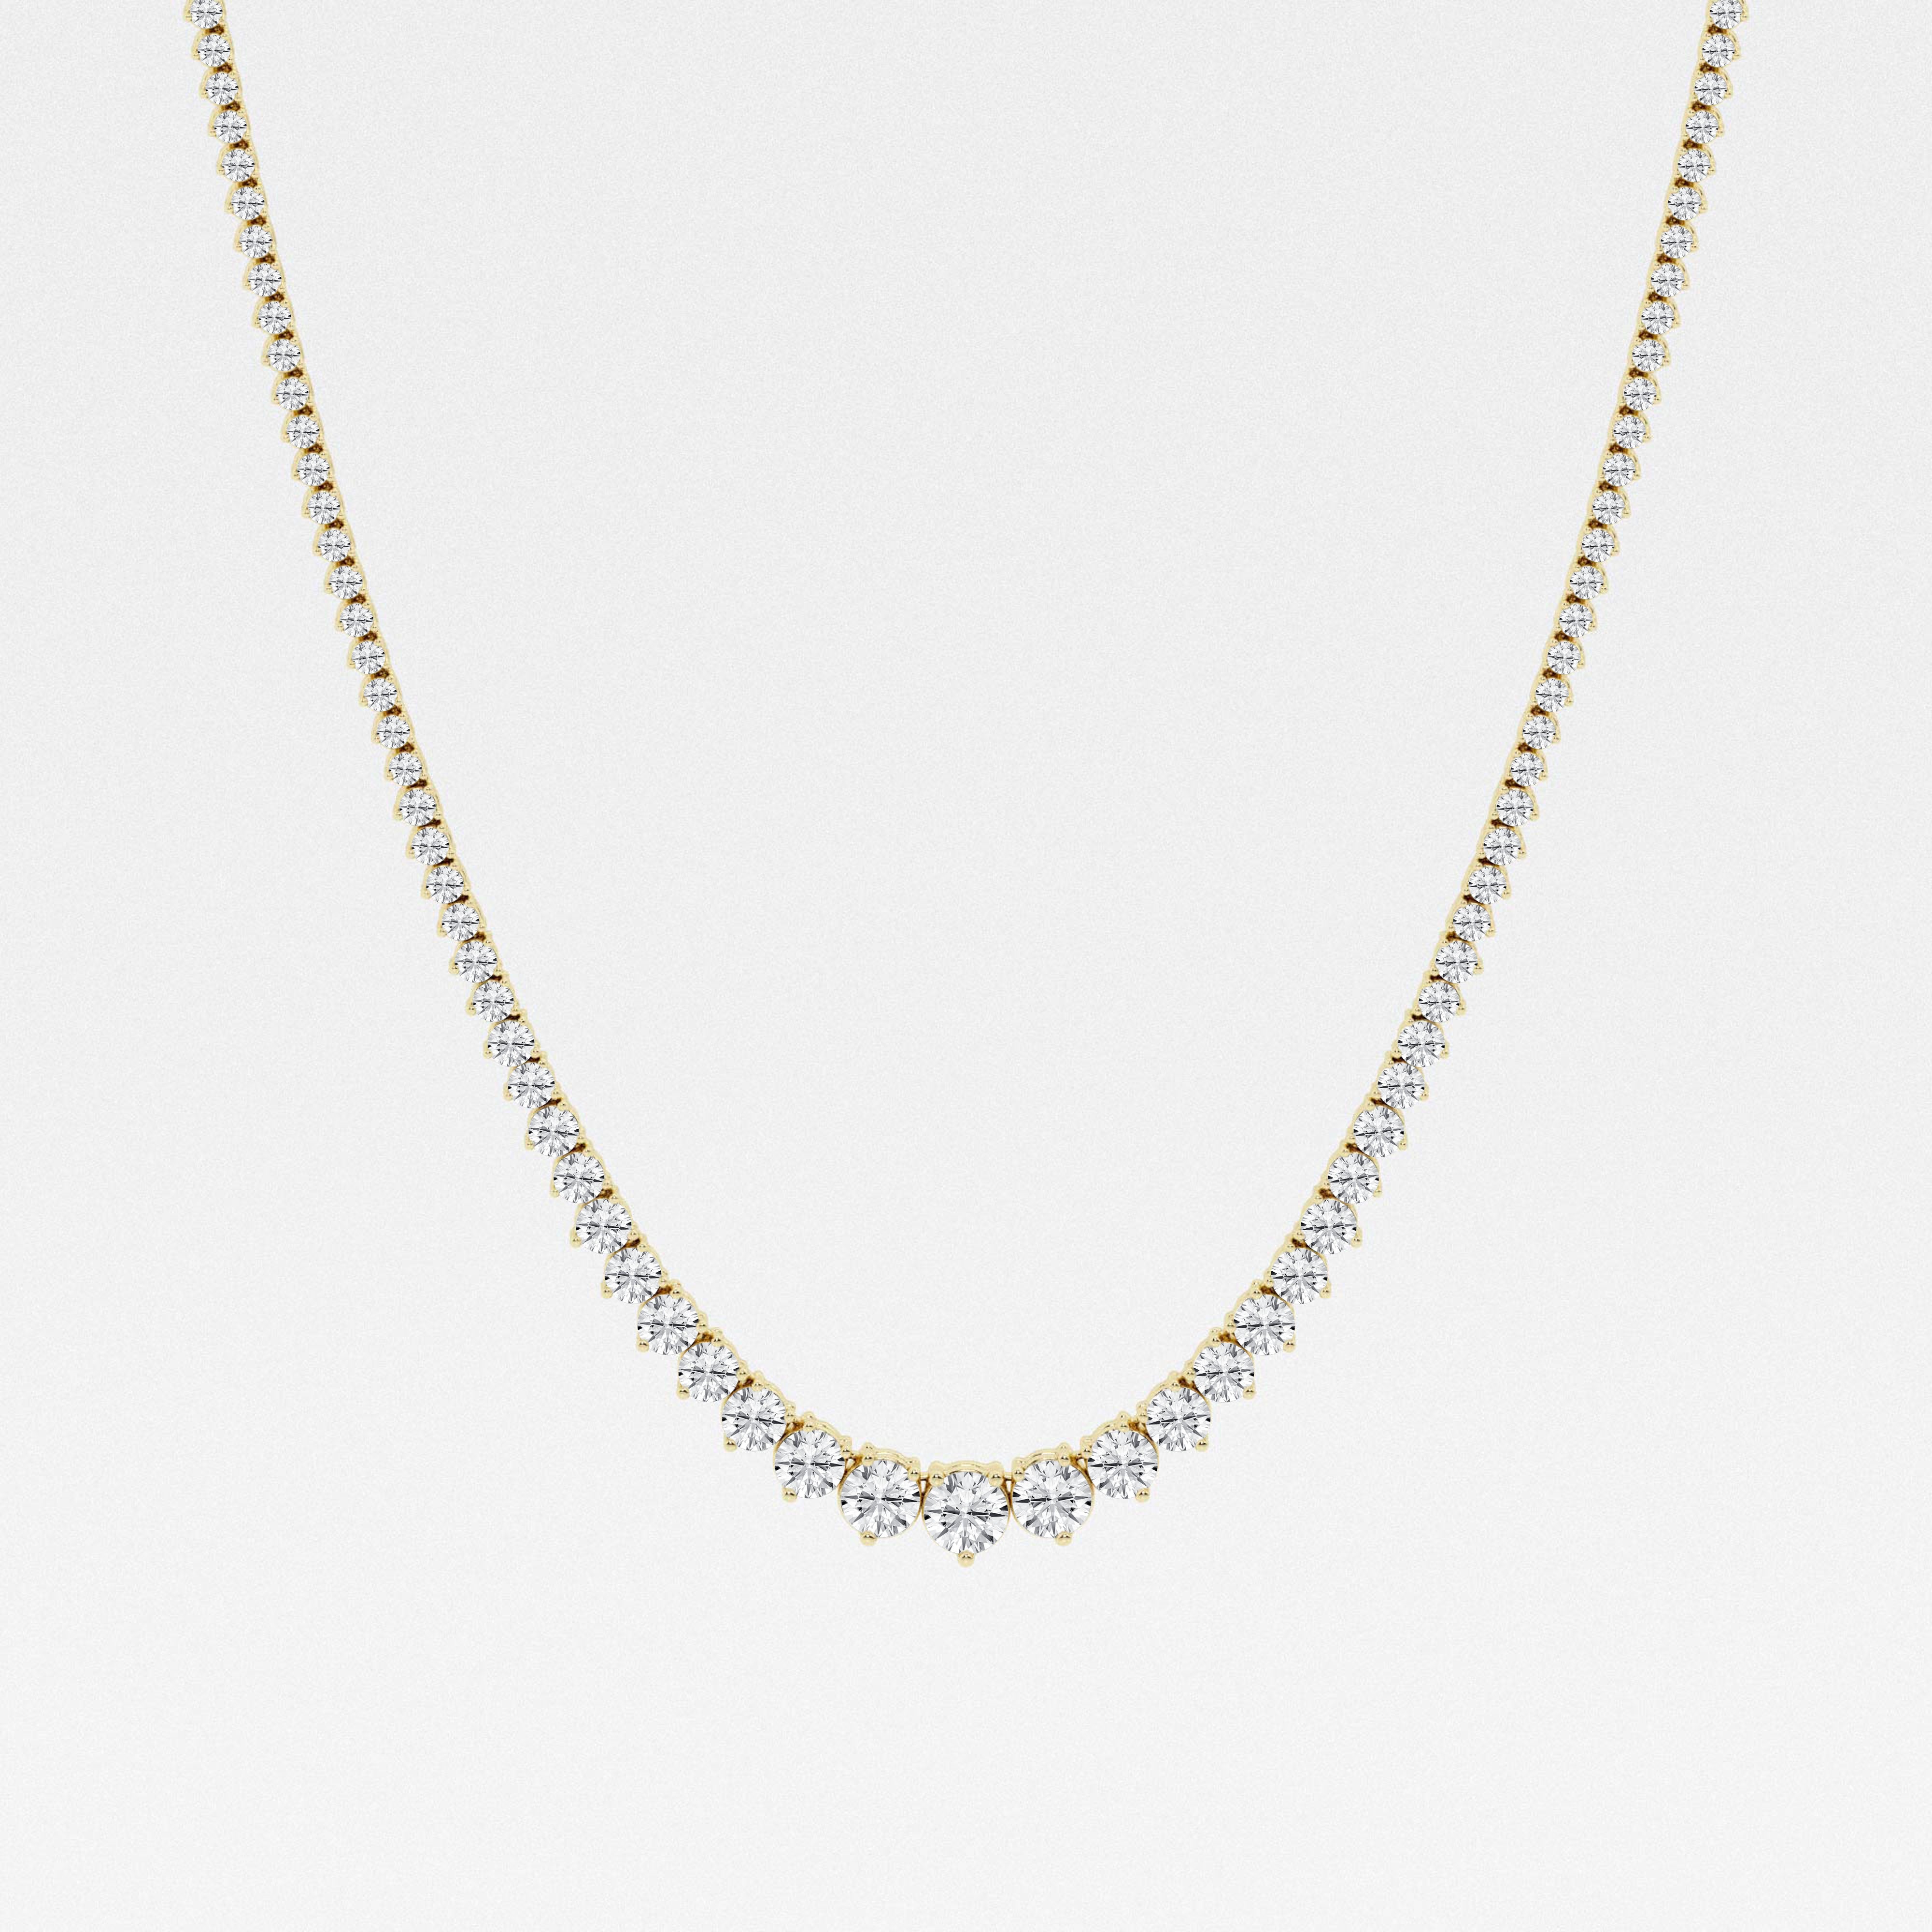 Shop 10 Carat Diamond Heart Necklace | Carbon & Hyde